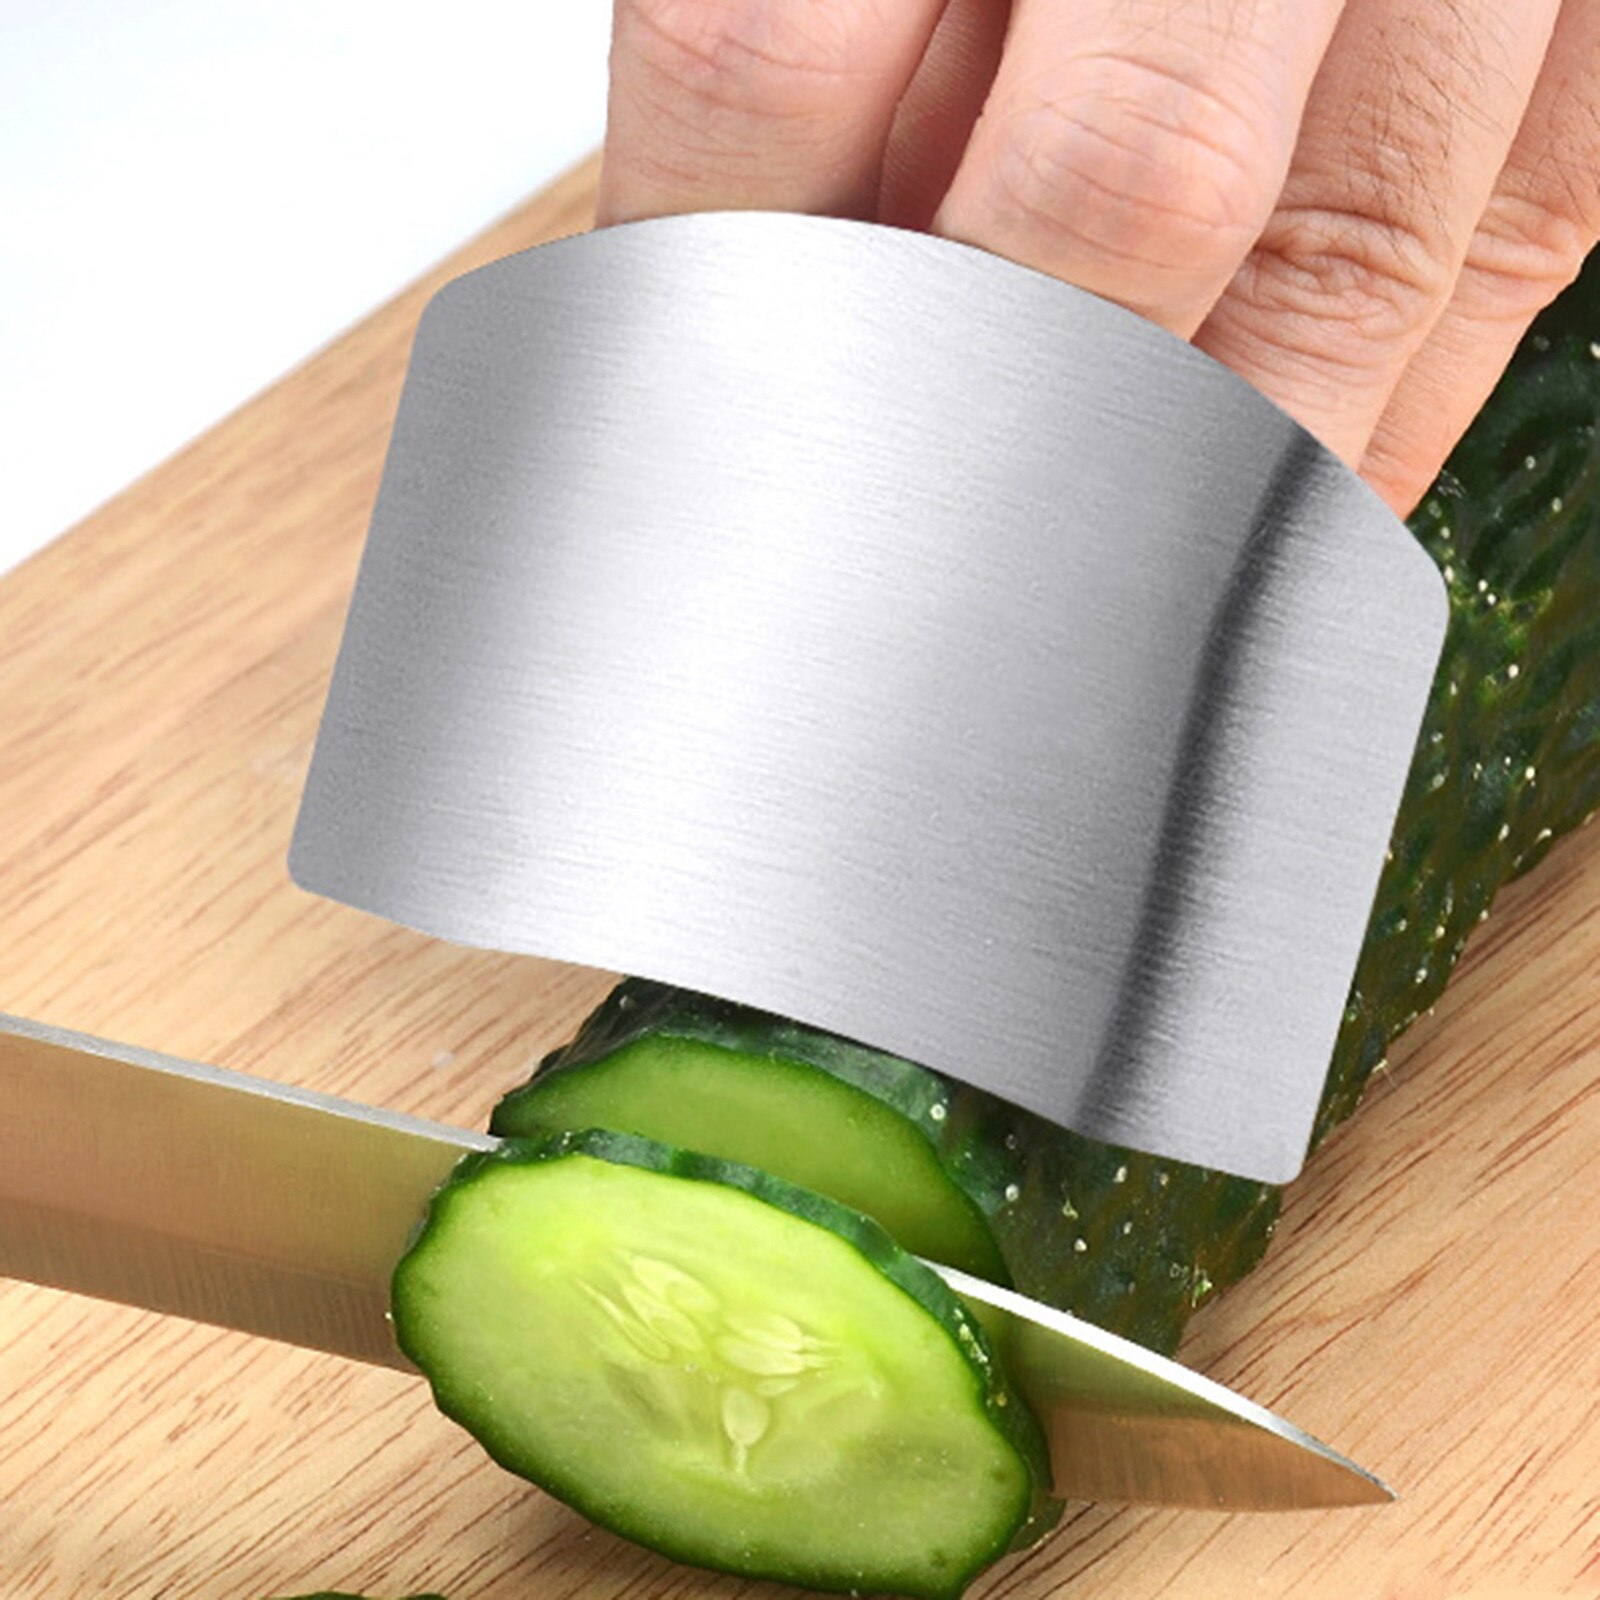 Rvs Keuken Tool Hand Vinger Bescherming Mes Cut Slice Veiligheid Bescherming Persoonlijke Veiligheid Uitgesneden Koken Gereedschap